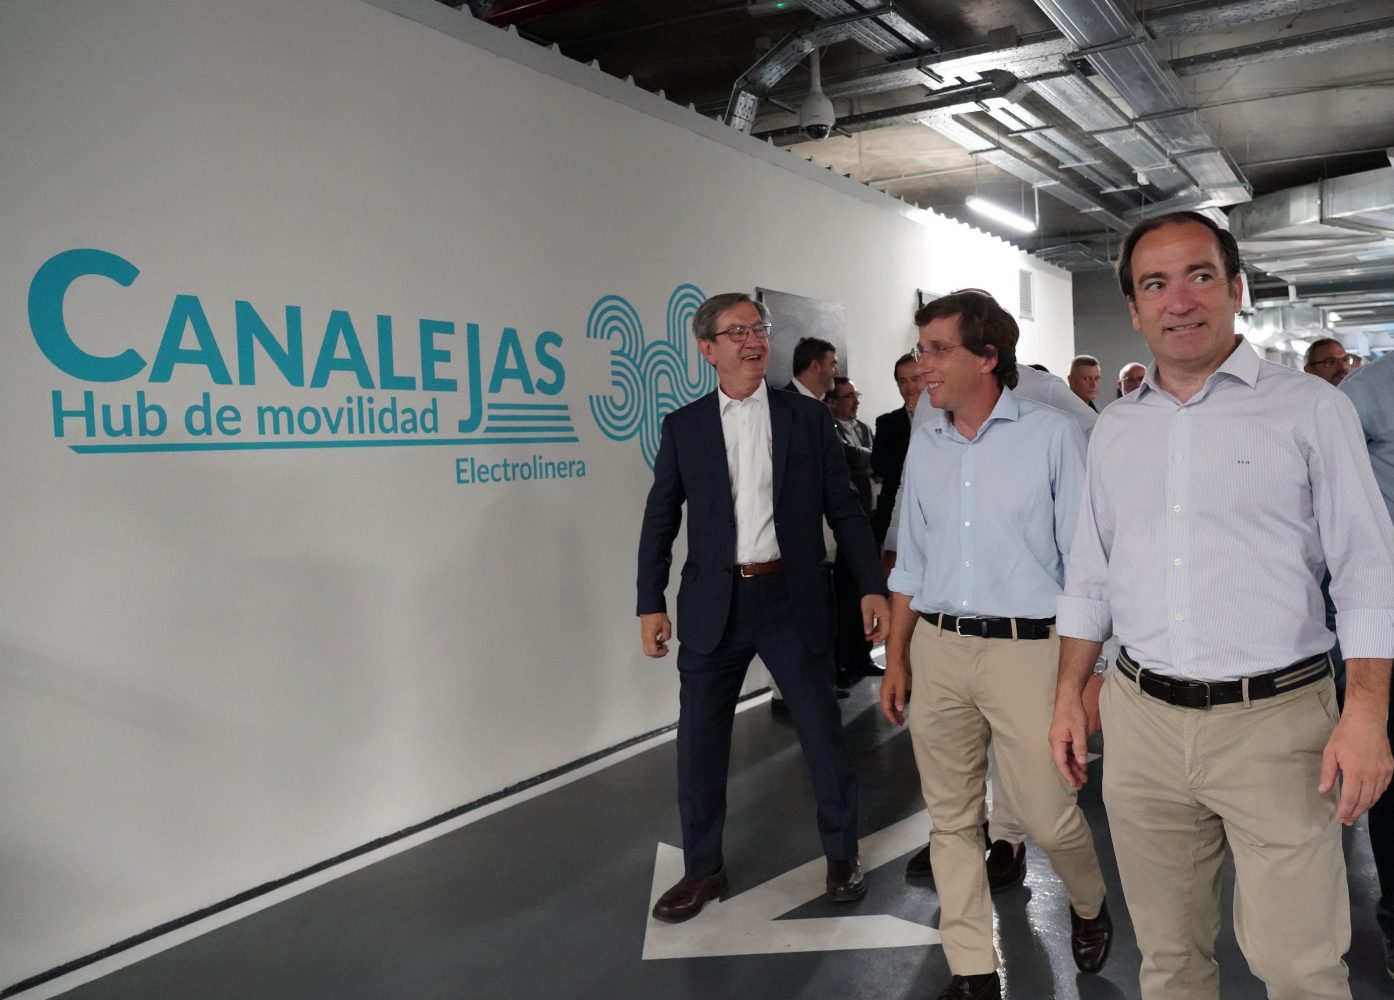 Electrolinera urbana más potente en el hub Canalejas 360 en Madrid